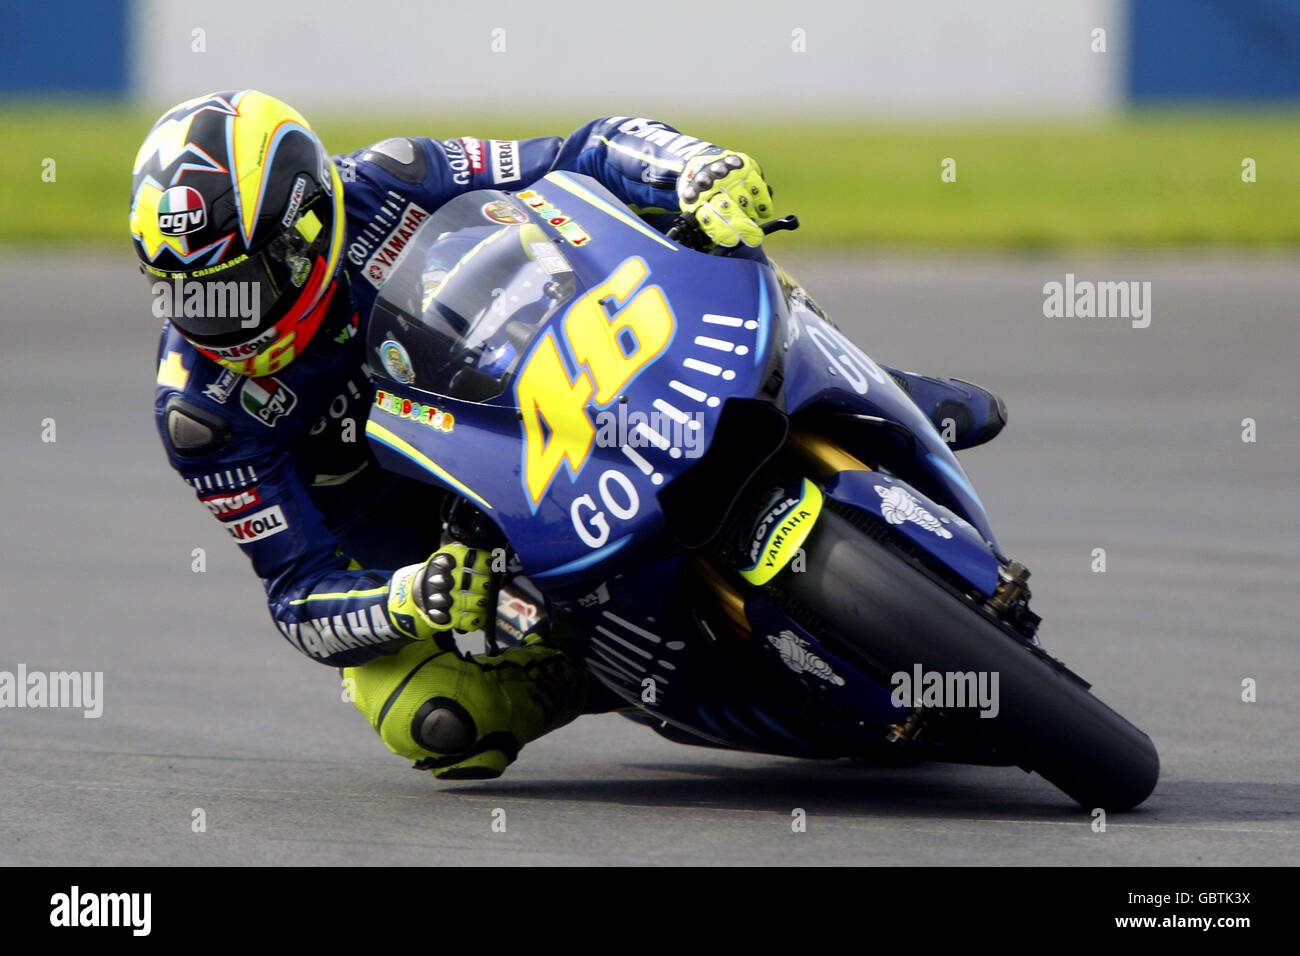 Motorradfahren - großer Preis von Großbritannien - Moto GP - Qualifikation. Valentino Rossi in Aktion Stockfoto